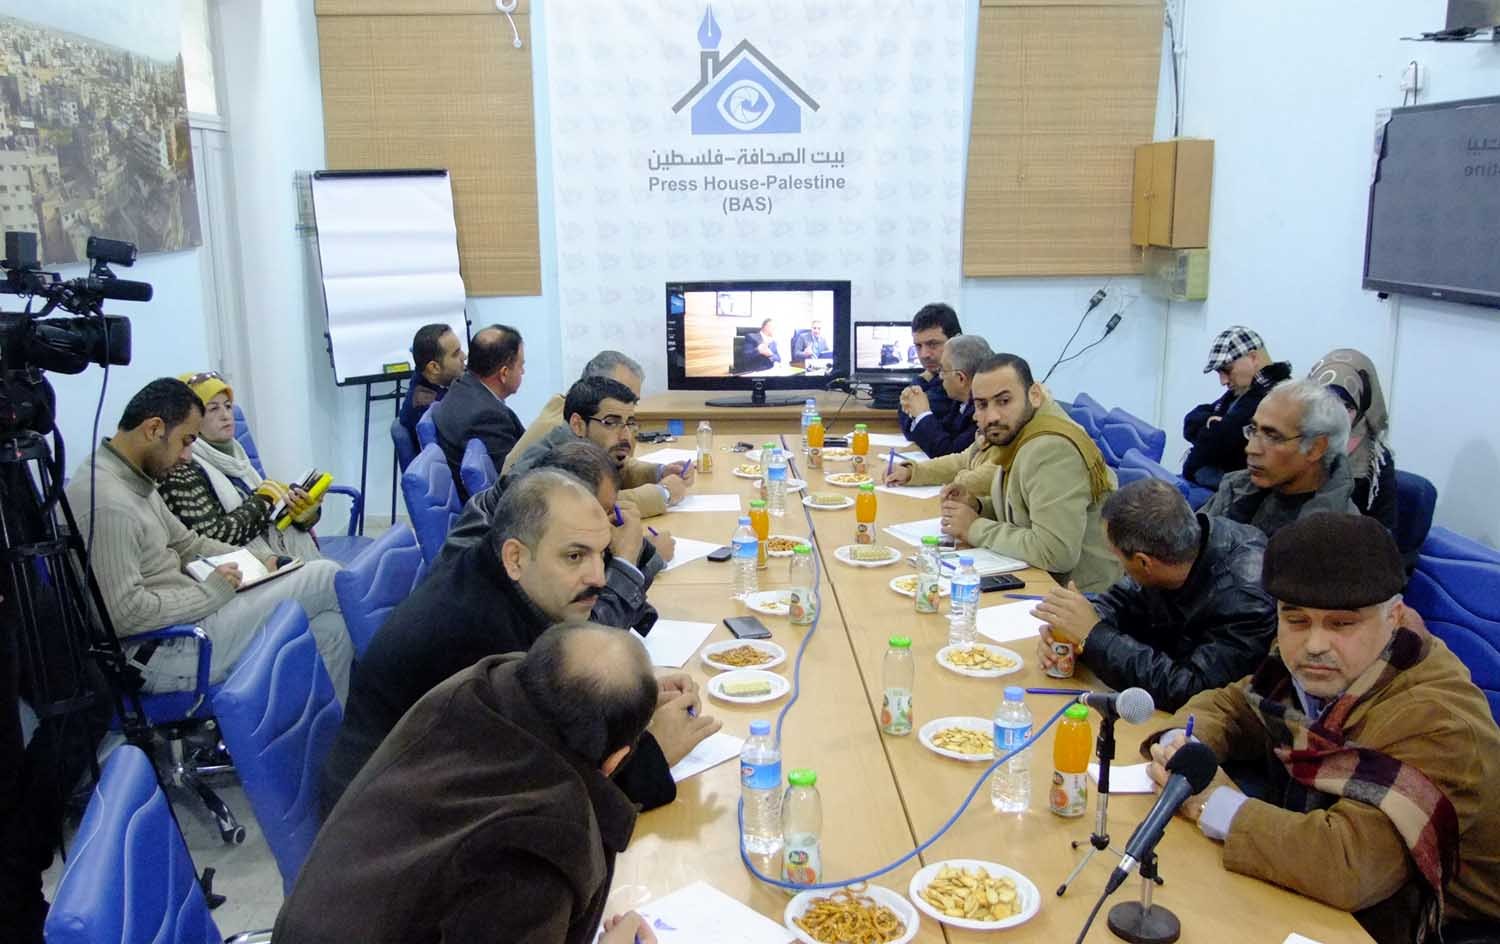 بيت الصحافة تنظم لقاءا مهما حول أزمة الكهرباء في قطاع غزة